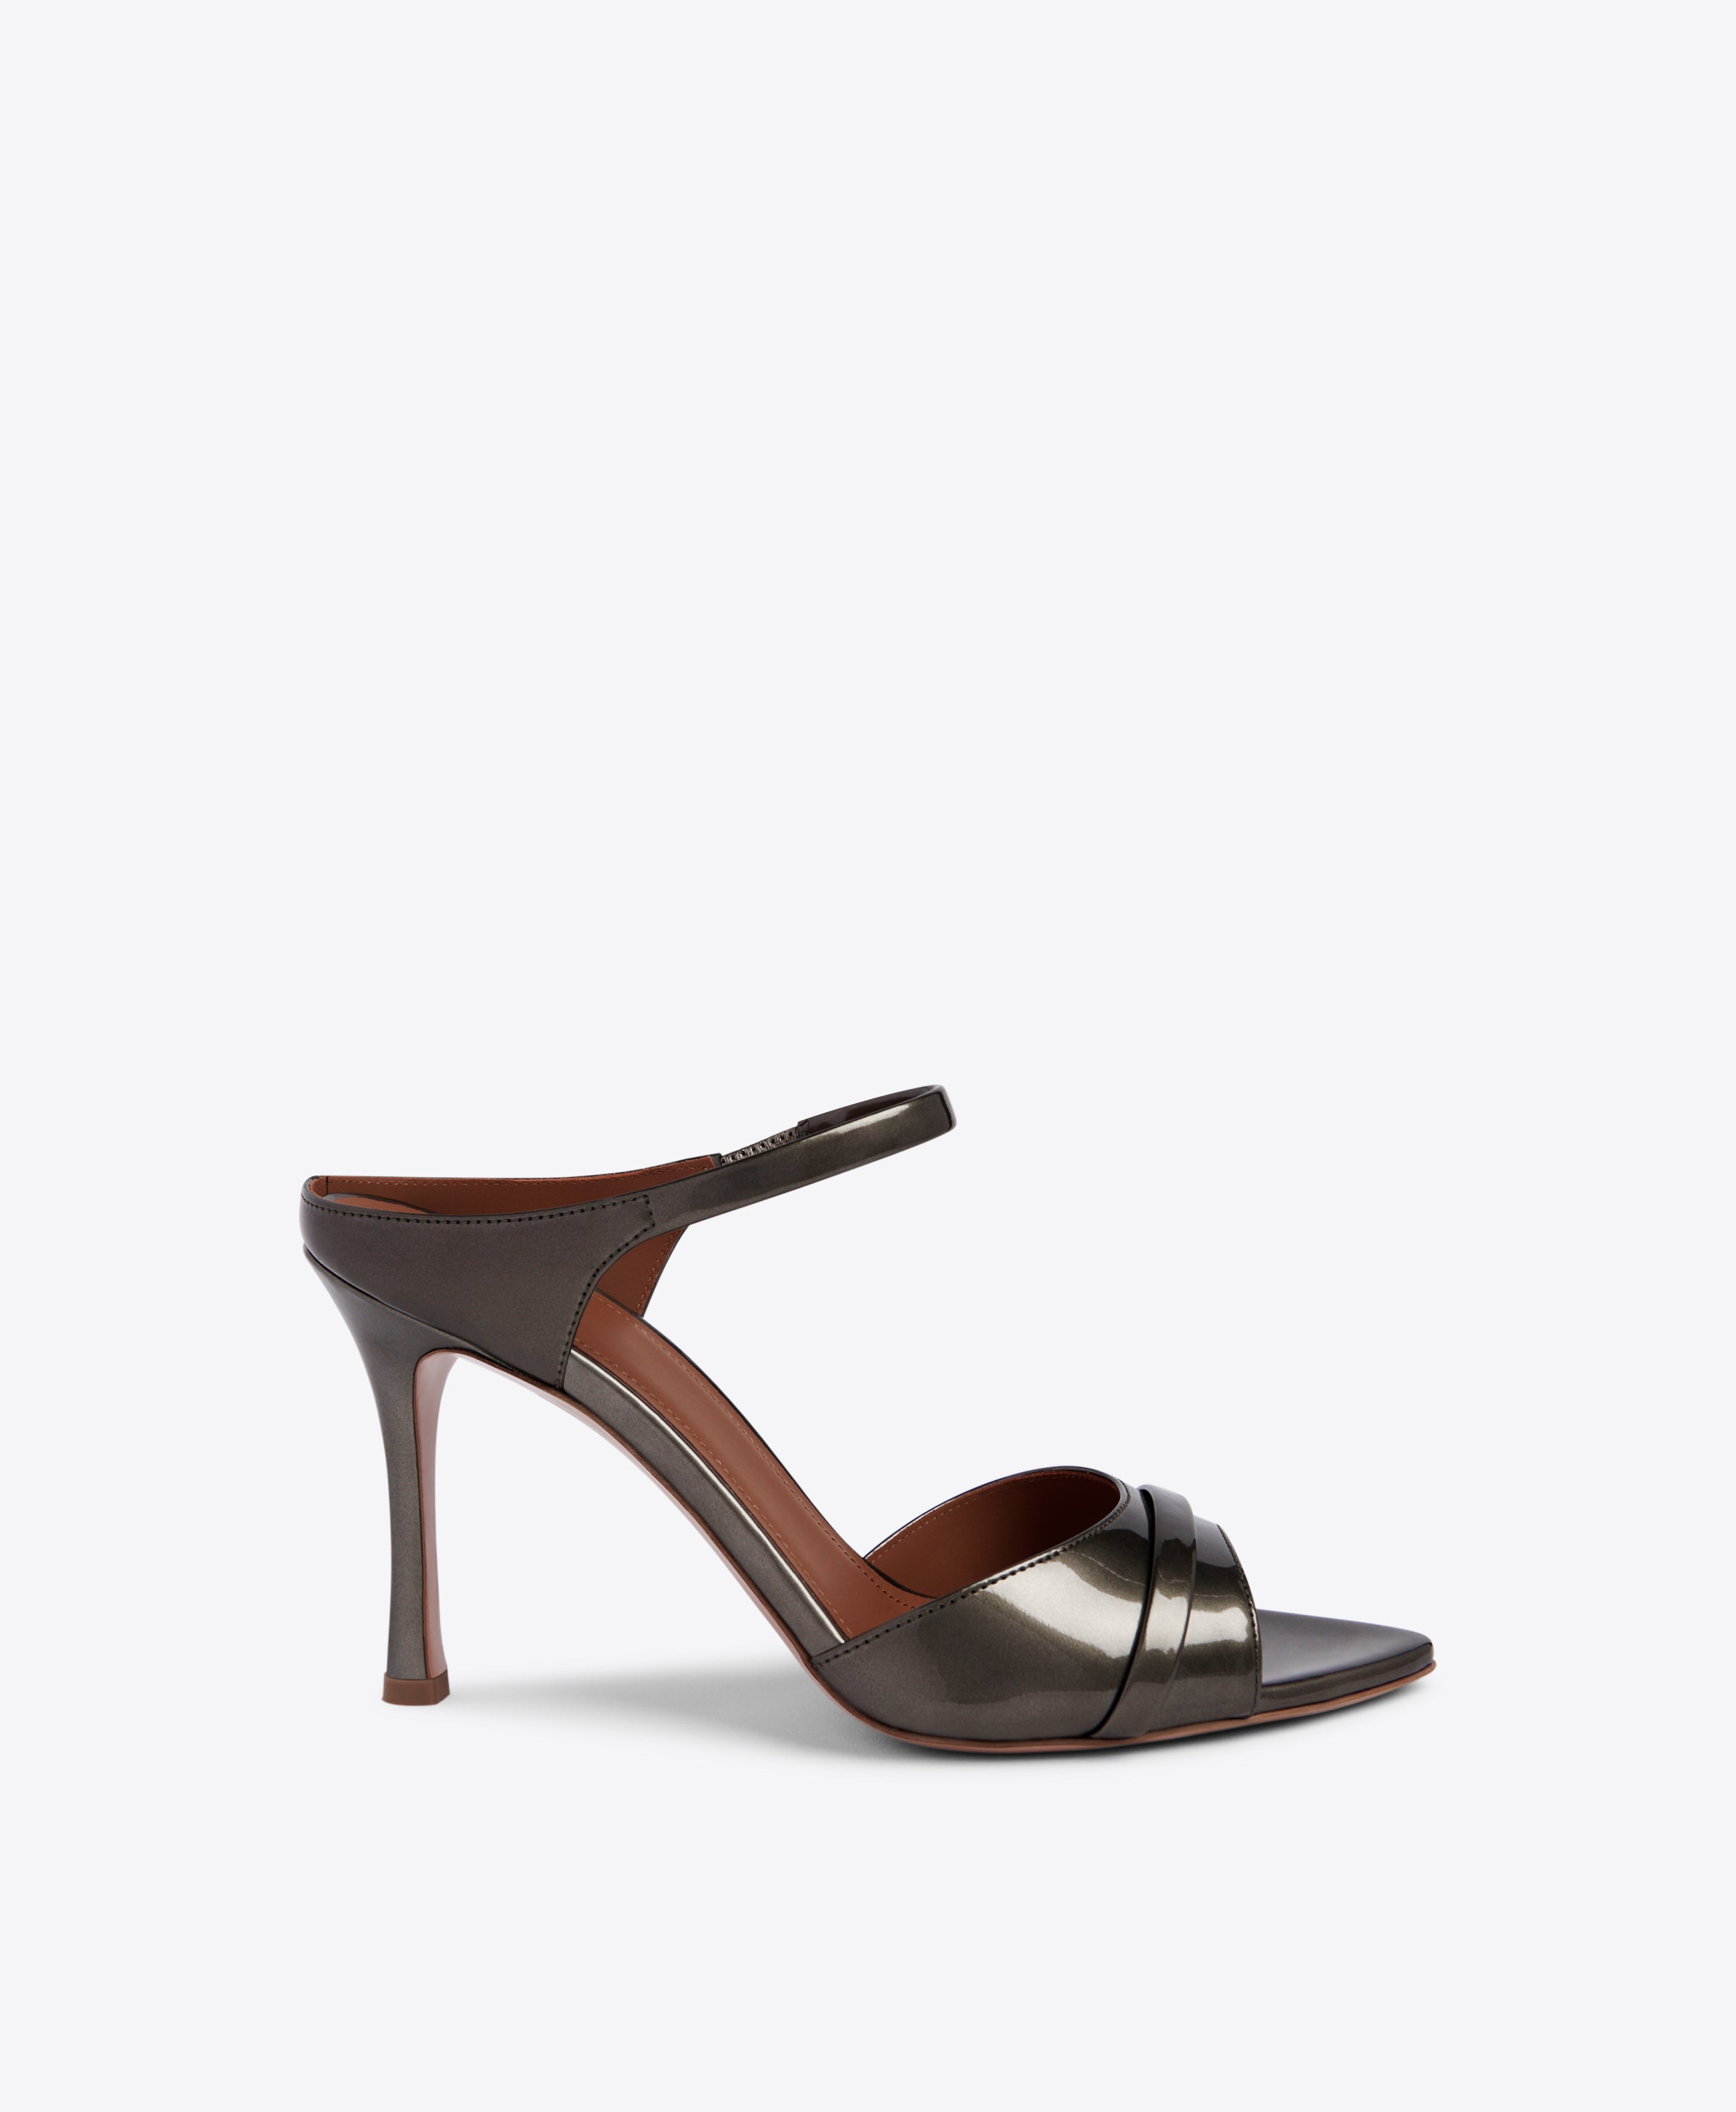 Women's Metallic Strappy Sandals & Heels | Nordstrom